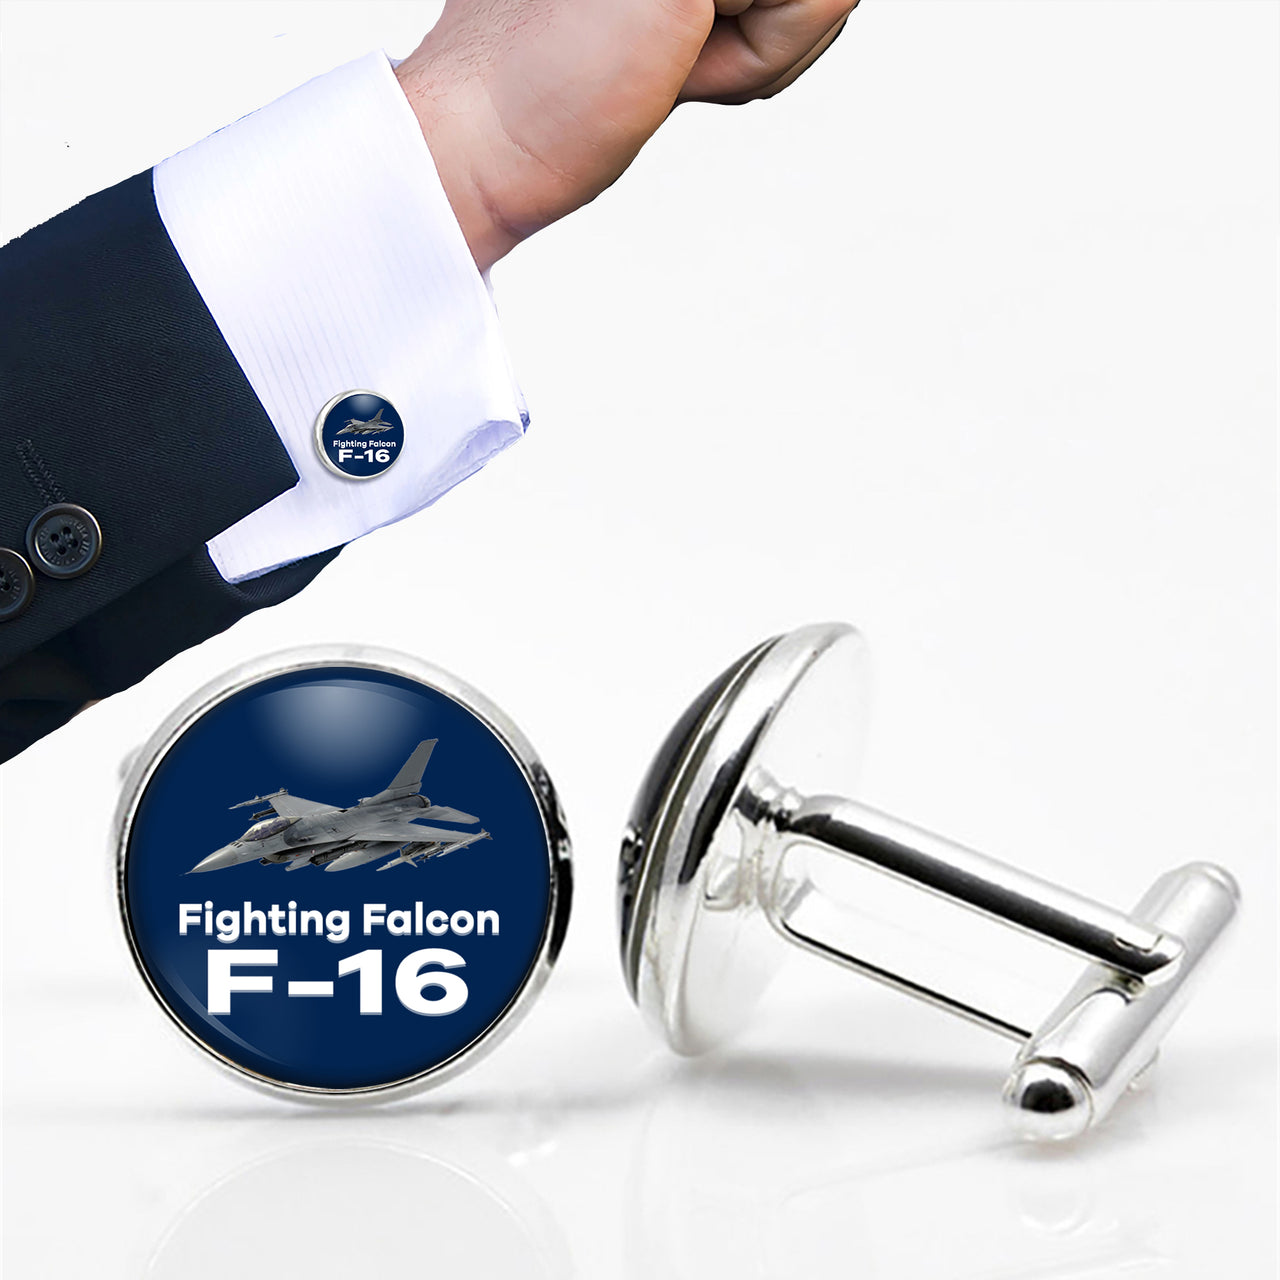 The Fighting Falcon F16 Designed Cuff Links